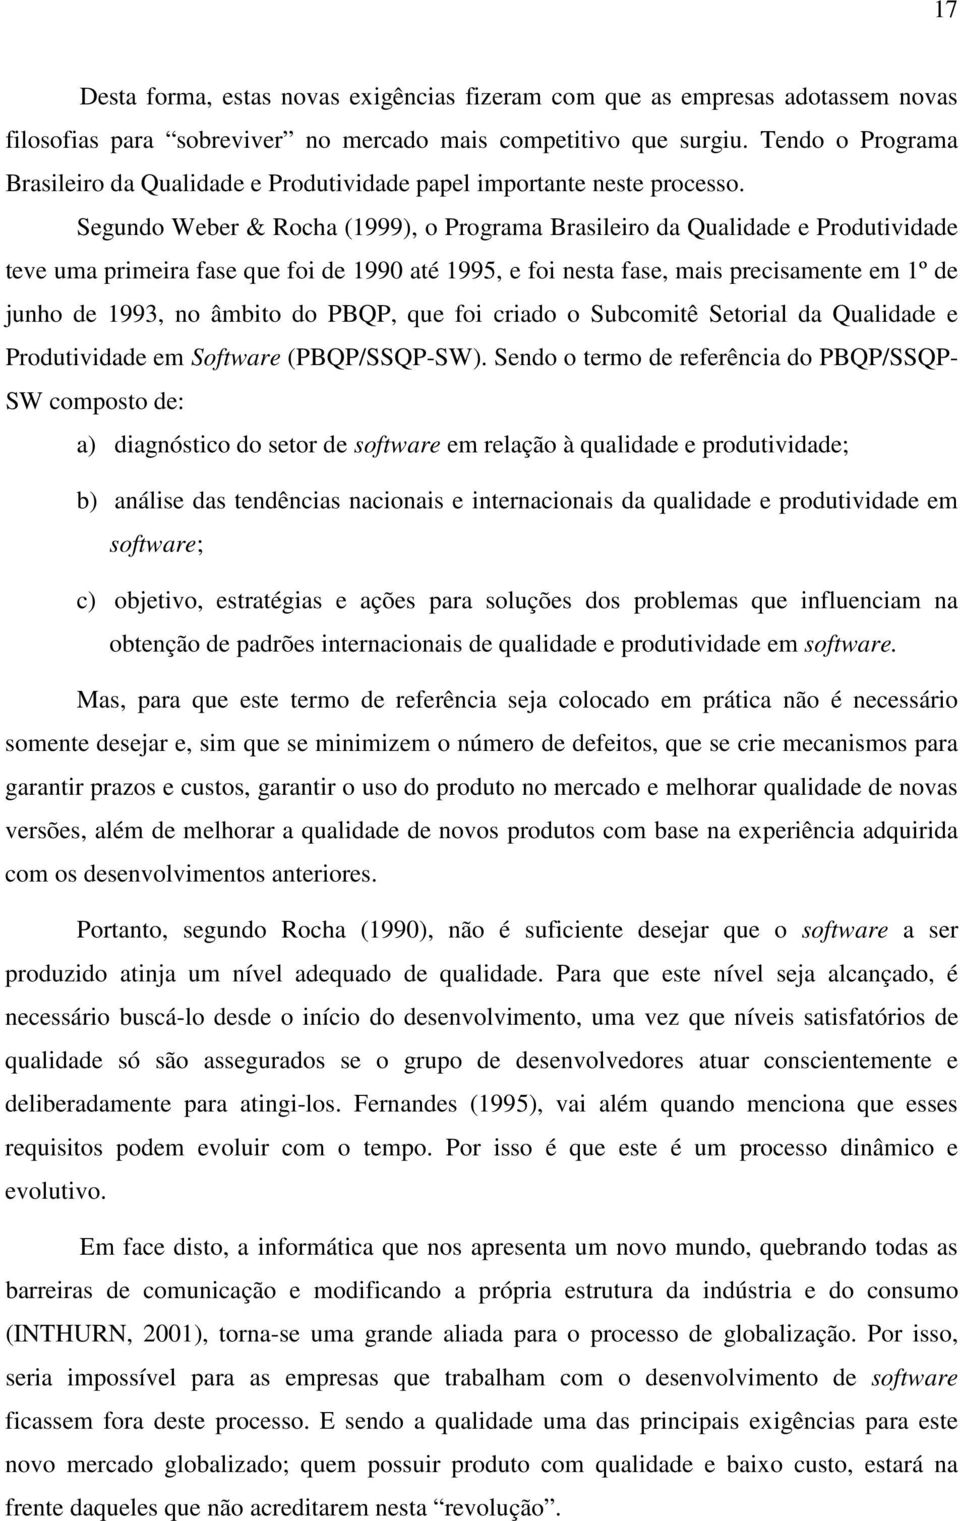 Segundo Weber & Rocha (1999), o Programa Brasileiro da Qualidade e Produtividade teve uma primeira fase que foi de 1990 até 1995, e foi nesta fase, mais precisamente em 1º de junho de 1993, no âmbito